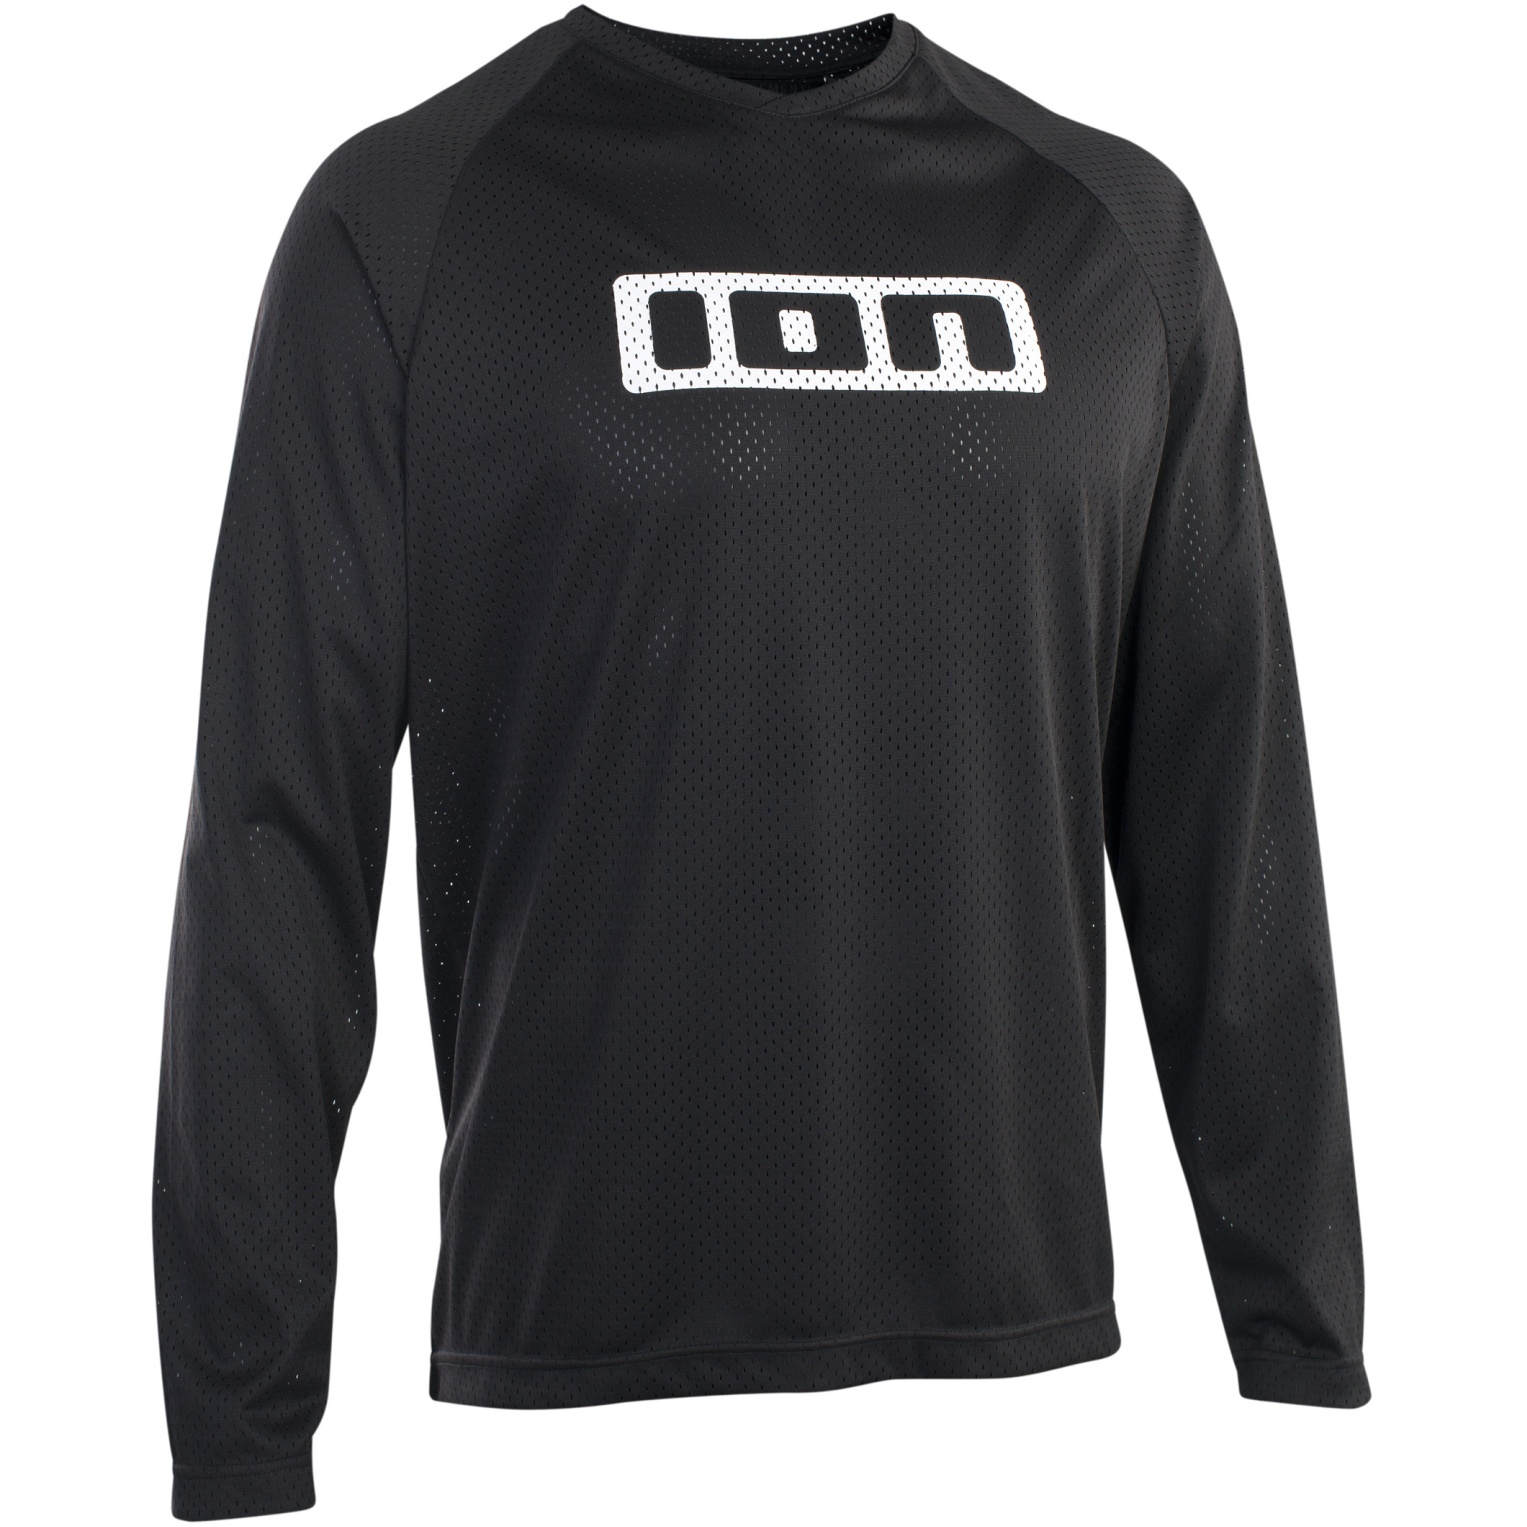 Productfoto van ION Bike Tee Shirt met Lange Mouwen Logo - Zwart 47220